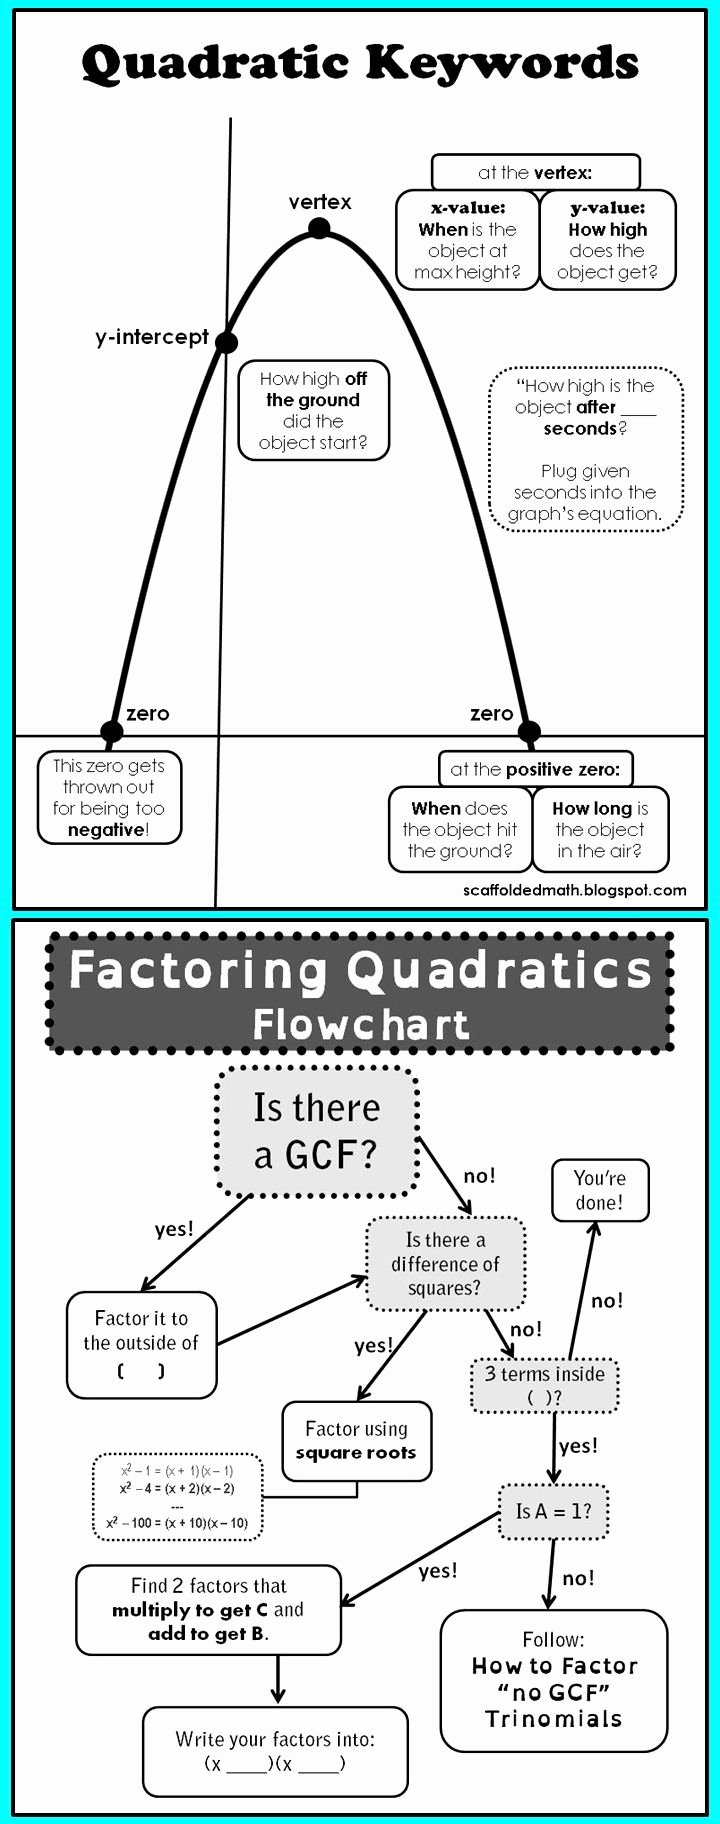 Quadratic Equations Word Problems Worksheet Best Of Quadratic Word Problems Projectile Motion Worksheet